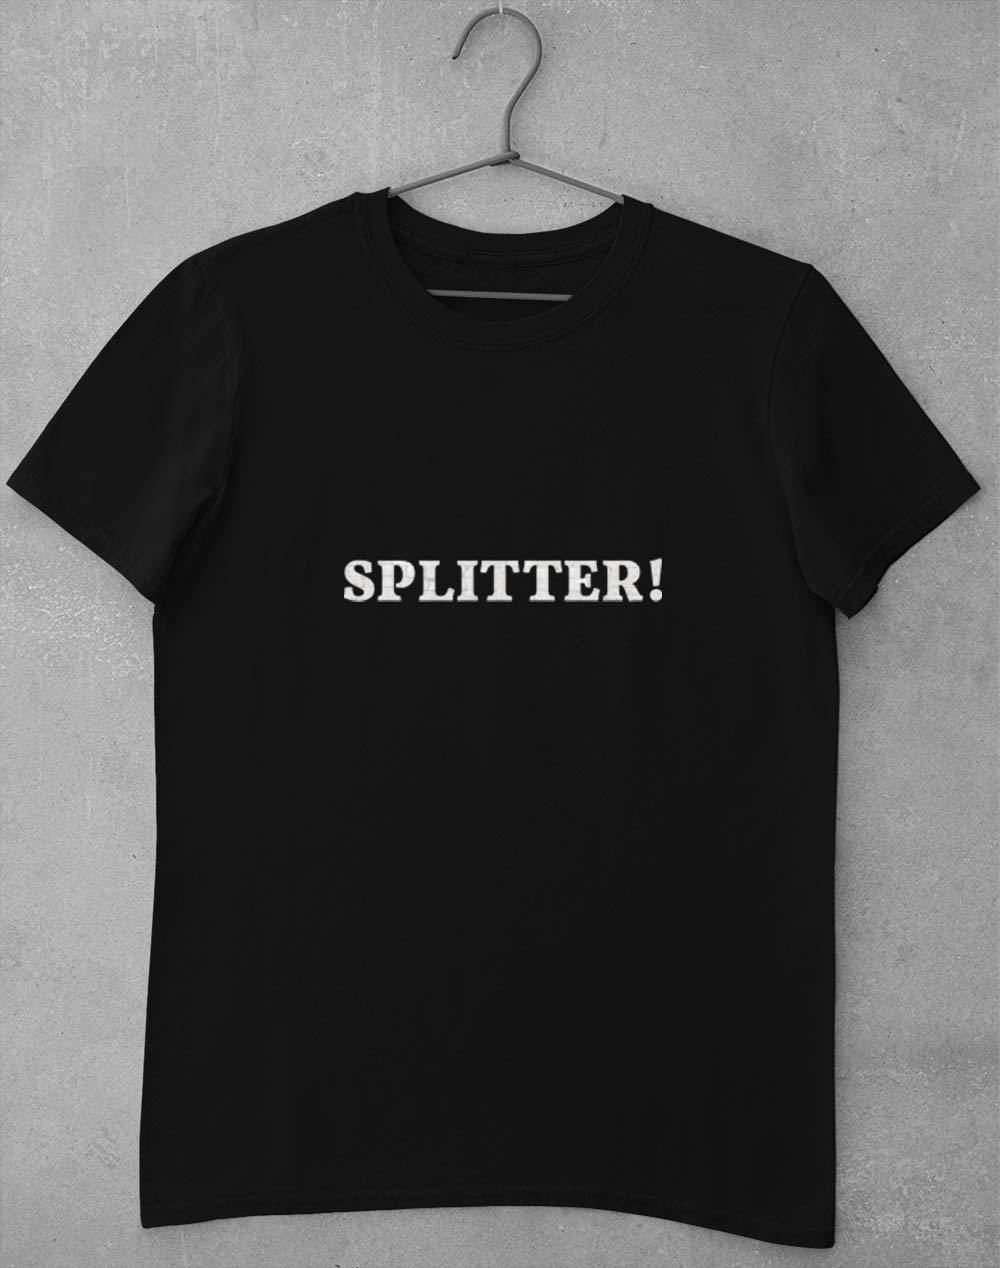 Splitter! T-Shirt S / Black  - Off World Tees